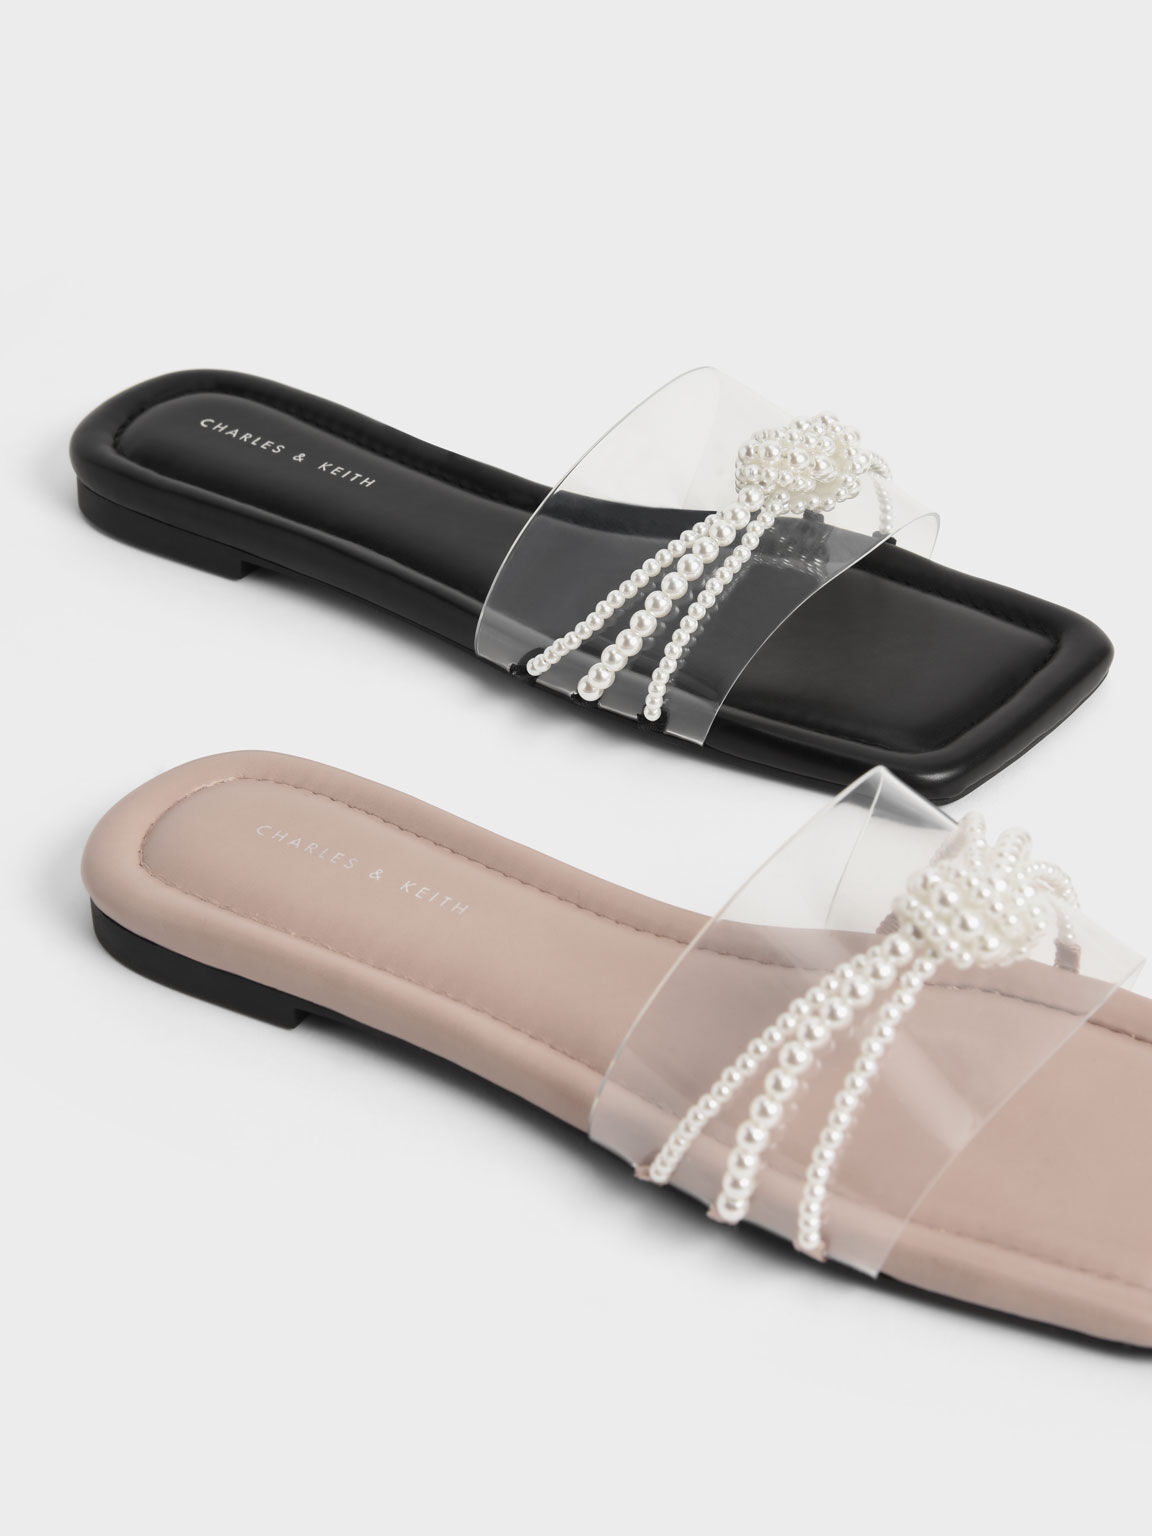 Sandal Slide Bead Embellished, Beige, hi-res